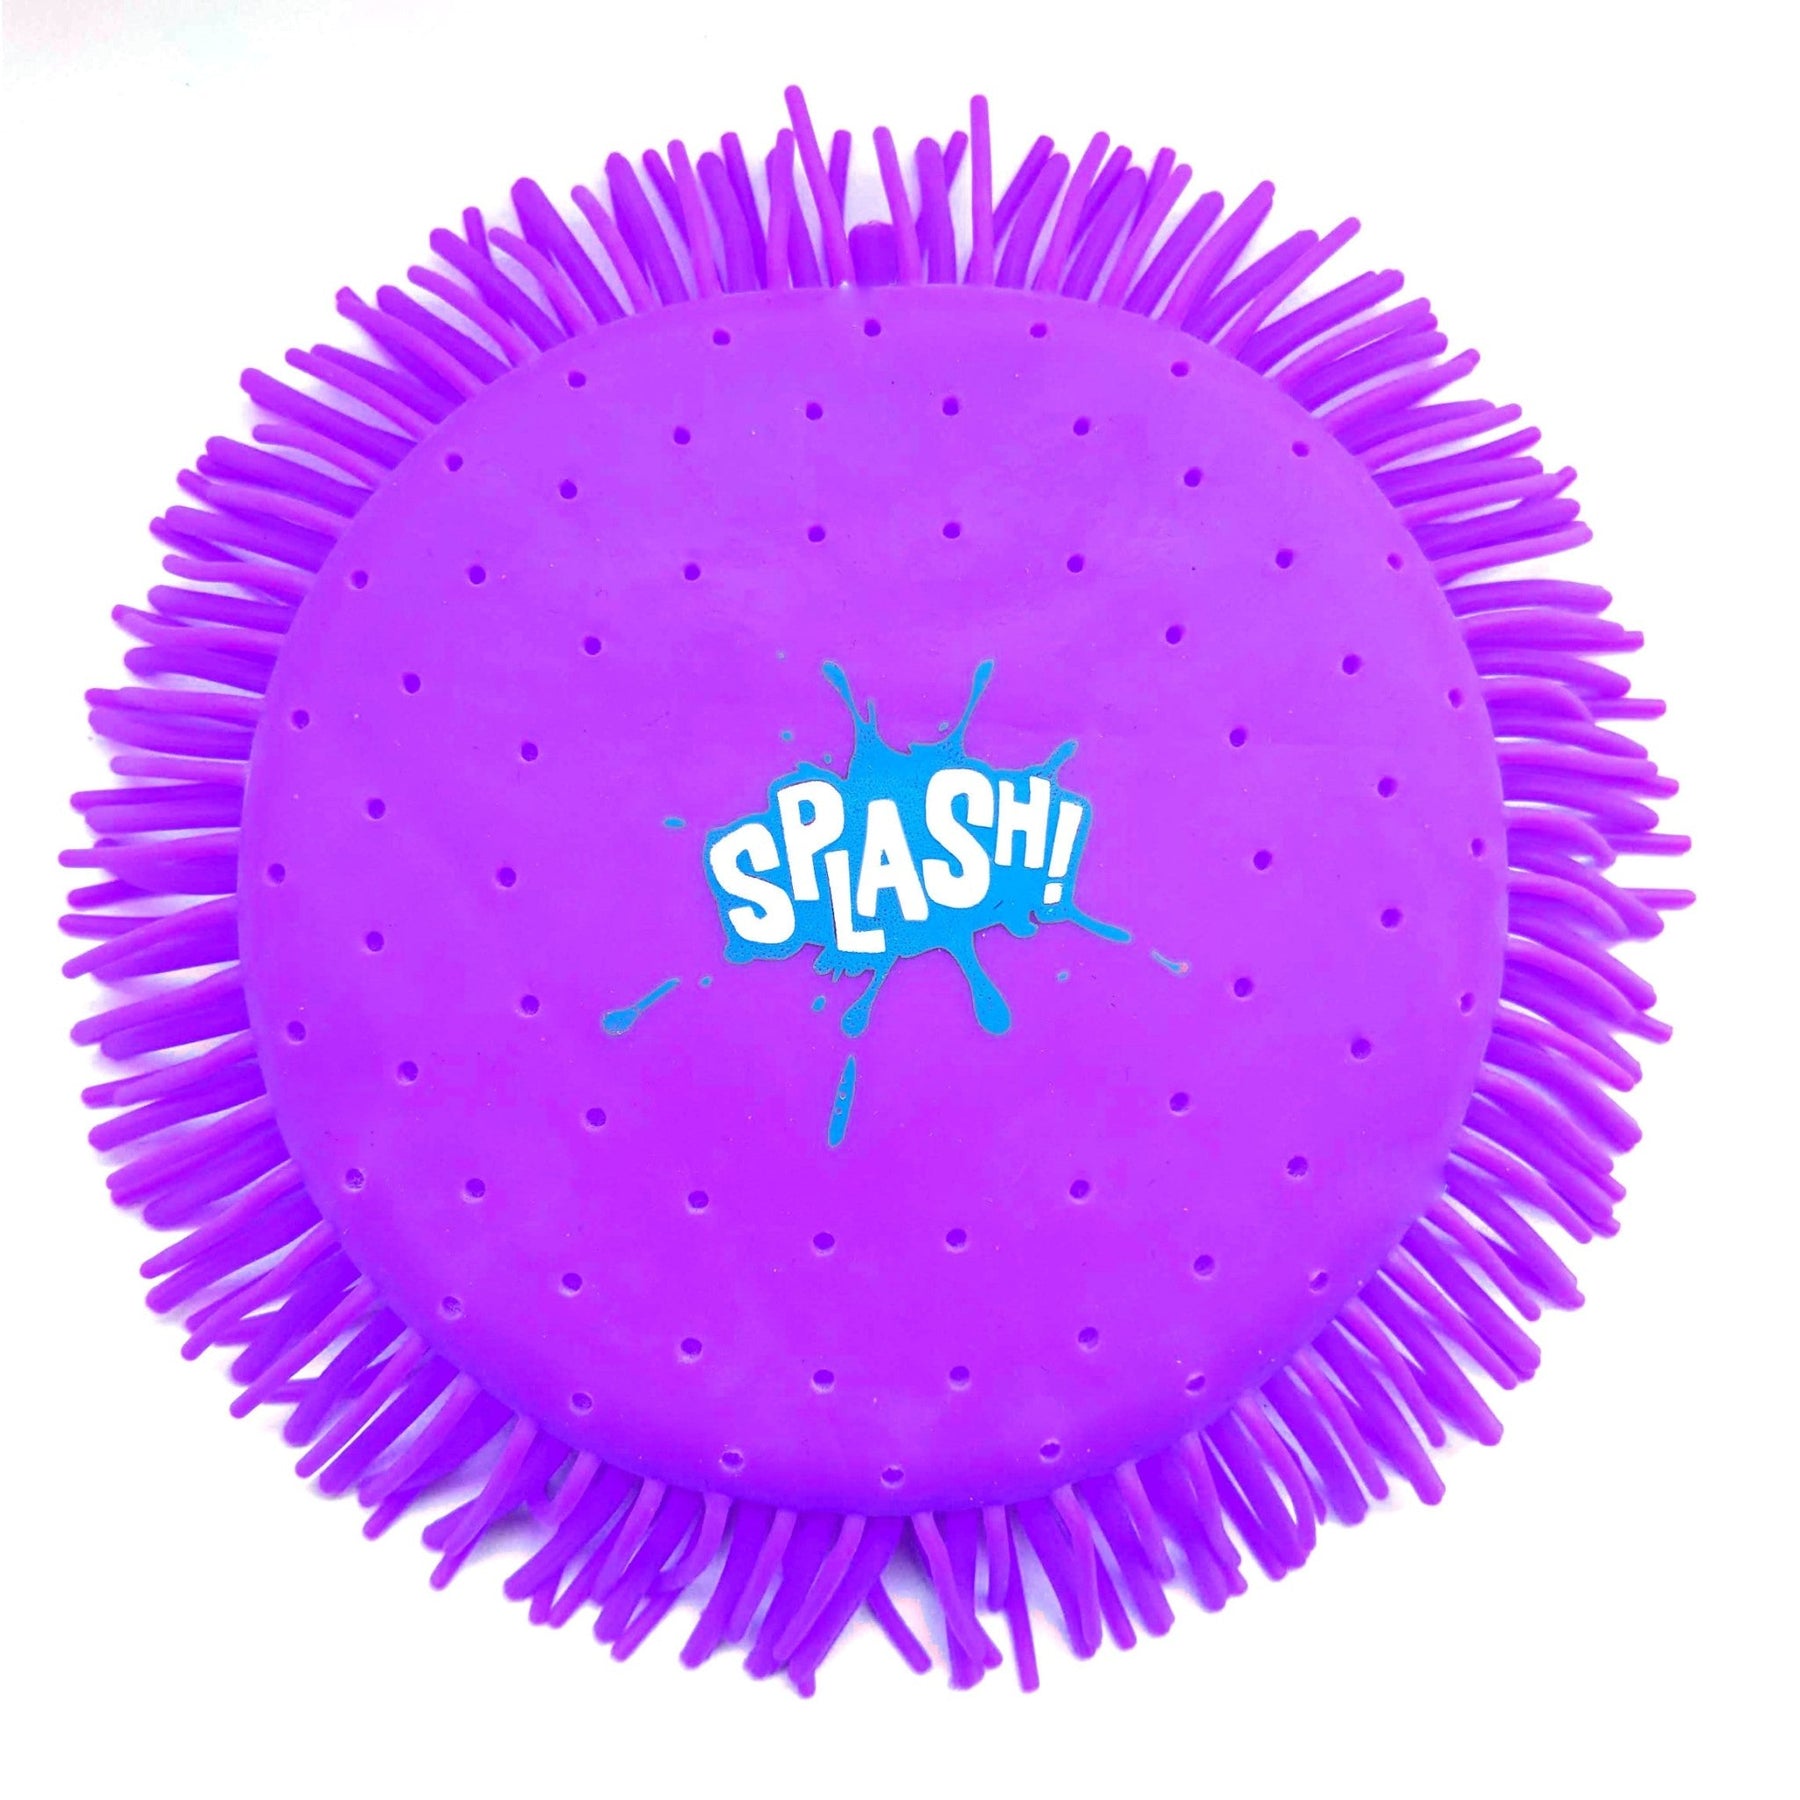 SPLASH Puffer Wasserfrisbee (18cm) - Poolpirat